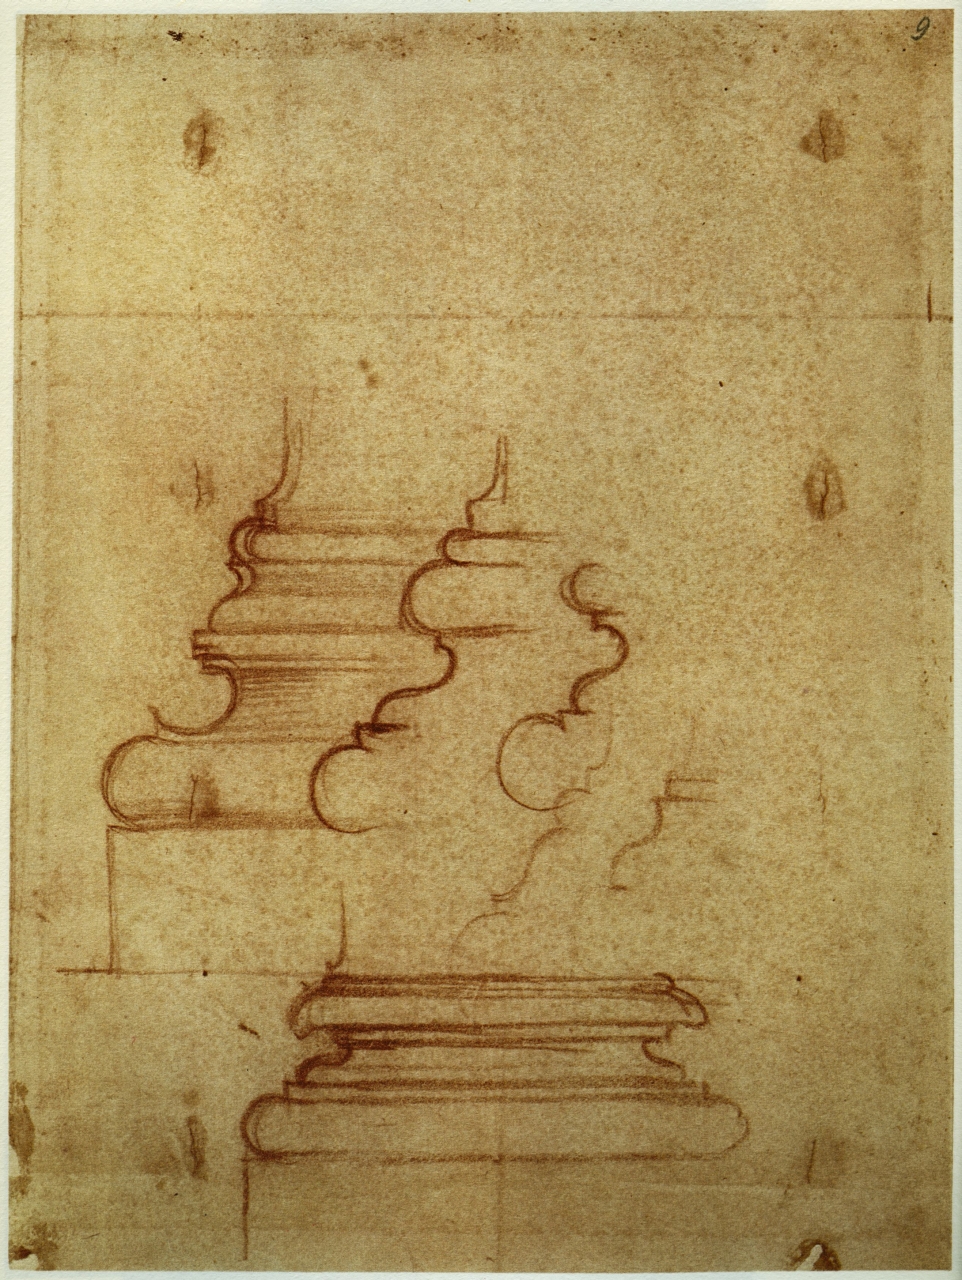 basi di pilastro per la Sagrestia Nuova/ pianta frammentaria del convento di S. Lorenzo (disegno) di Buonarroti Michelangelo (sec. XVI)